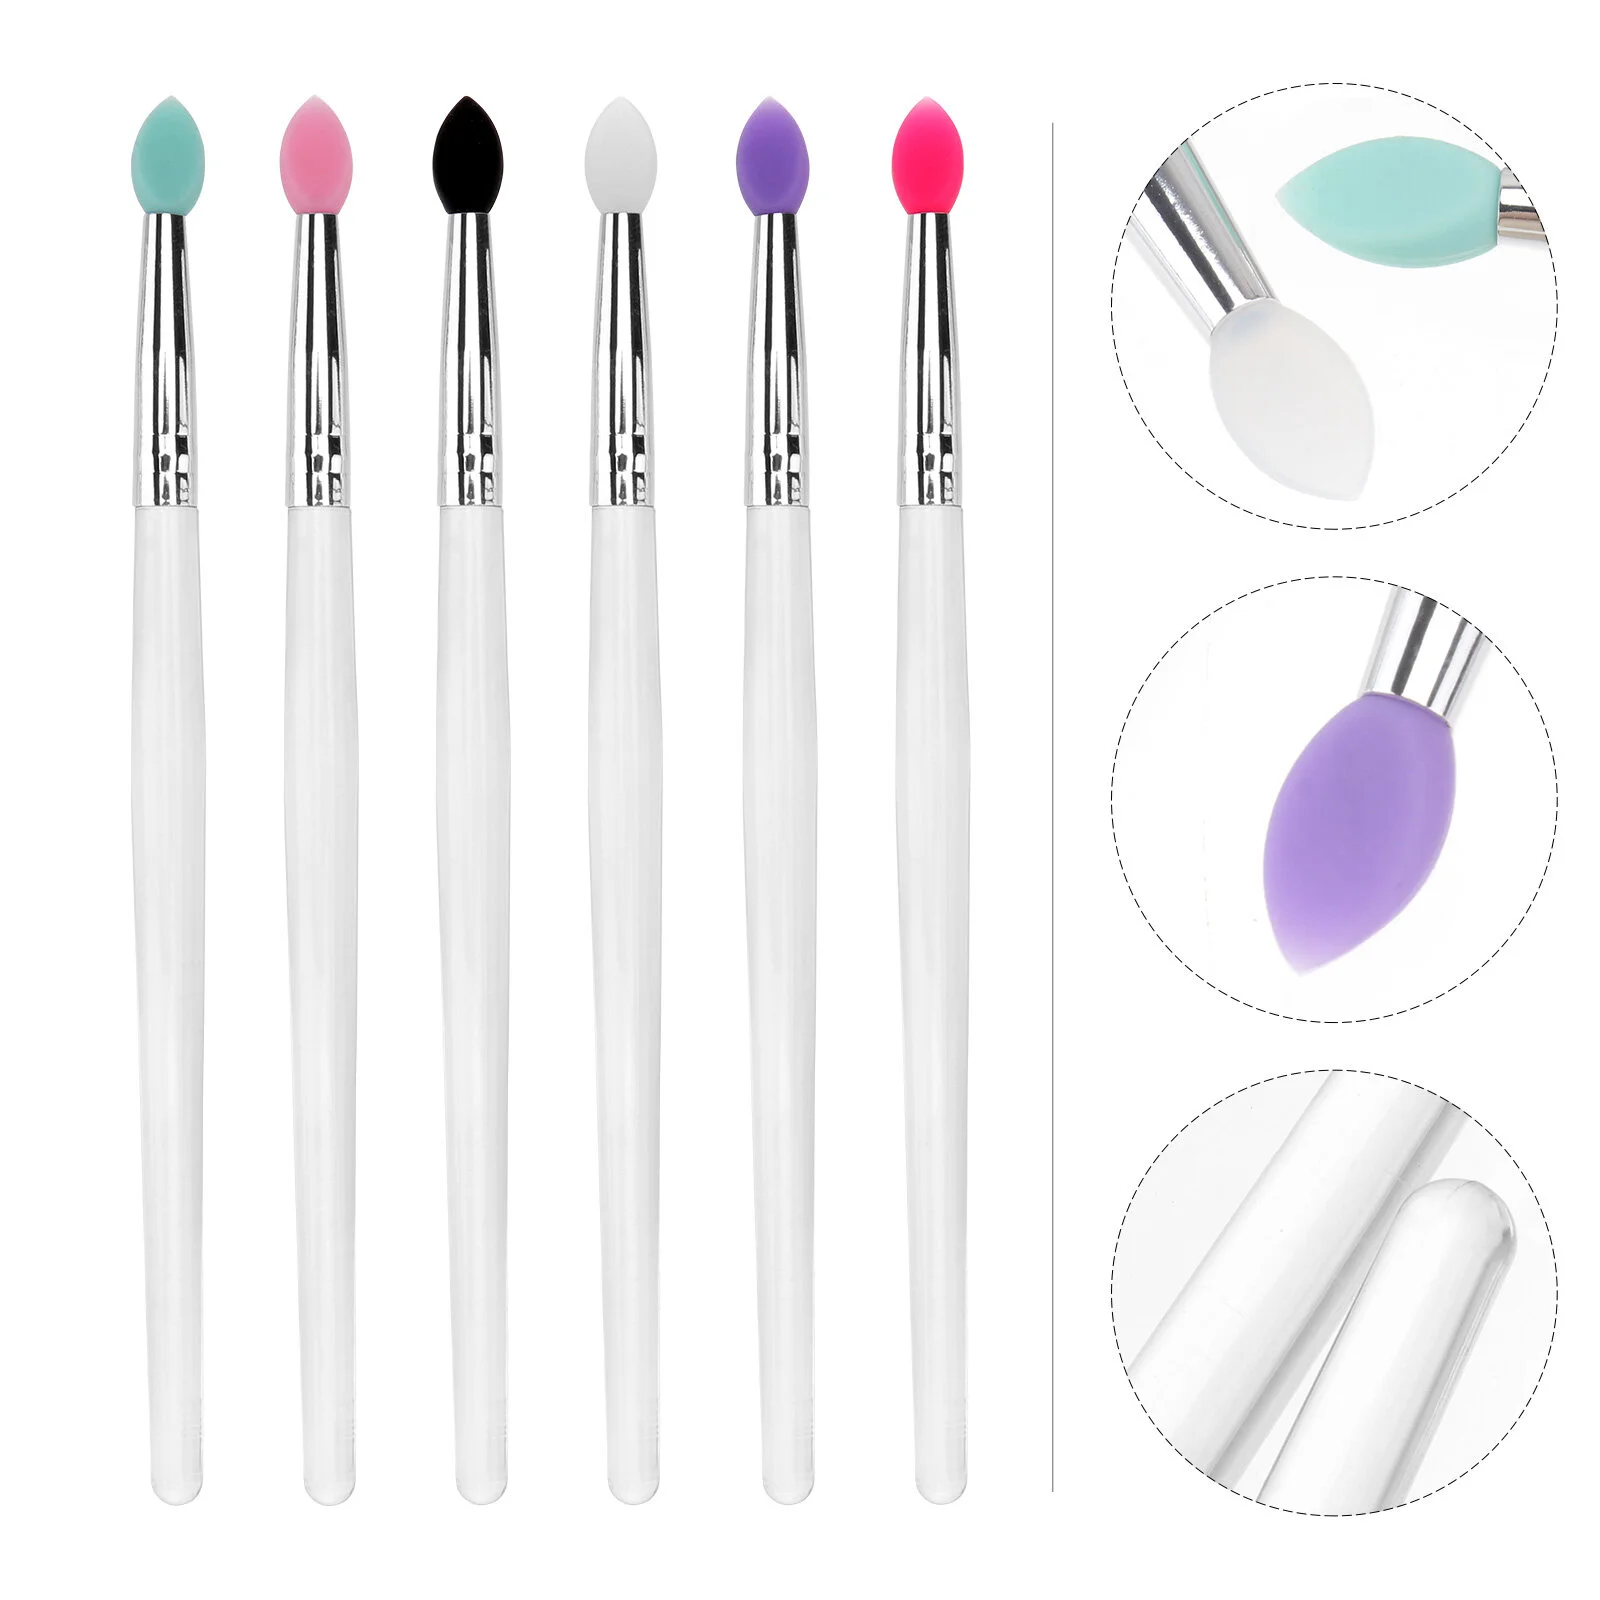 

6 PCS Eye Shadow Brush Make-up Set Eyeshadow Makeup Applicator Kit Silica Gel Application Tool Lip Brushes Disposable